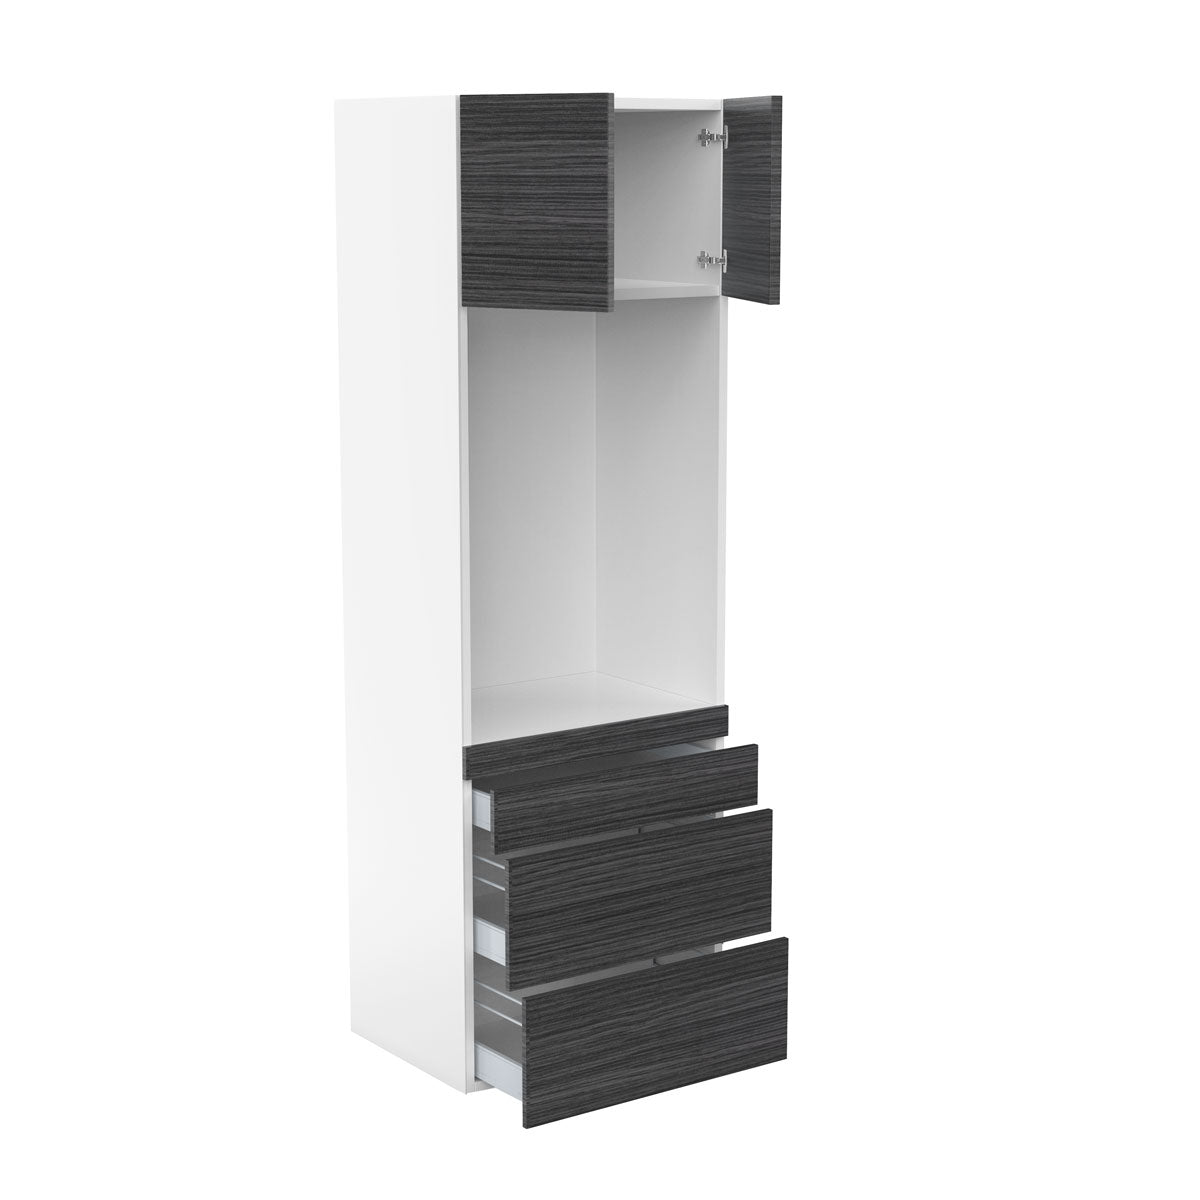 RTA - Dark Wood - Single Oven Tall Cabinets | 30"W x 90"H x 23.8"D